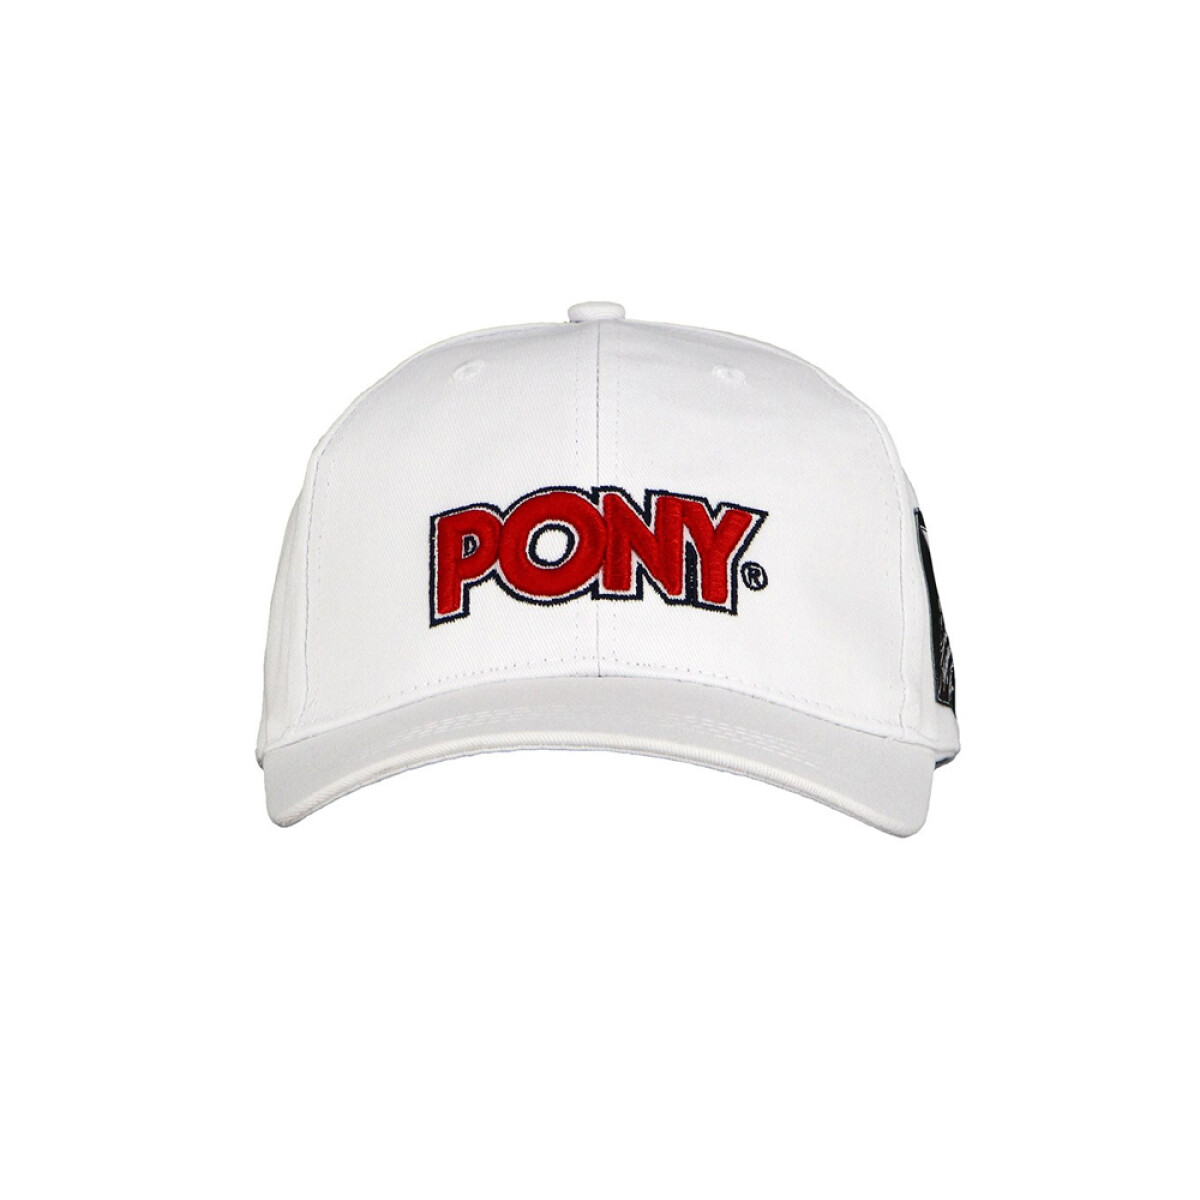 PONY CAP - White/red 